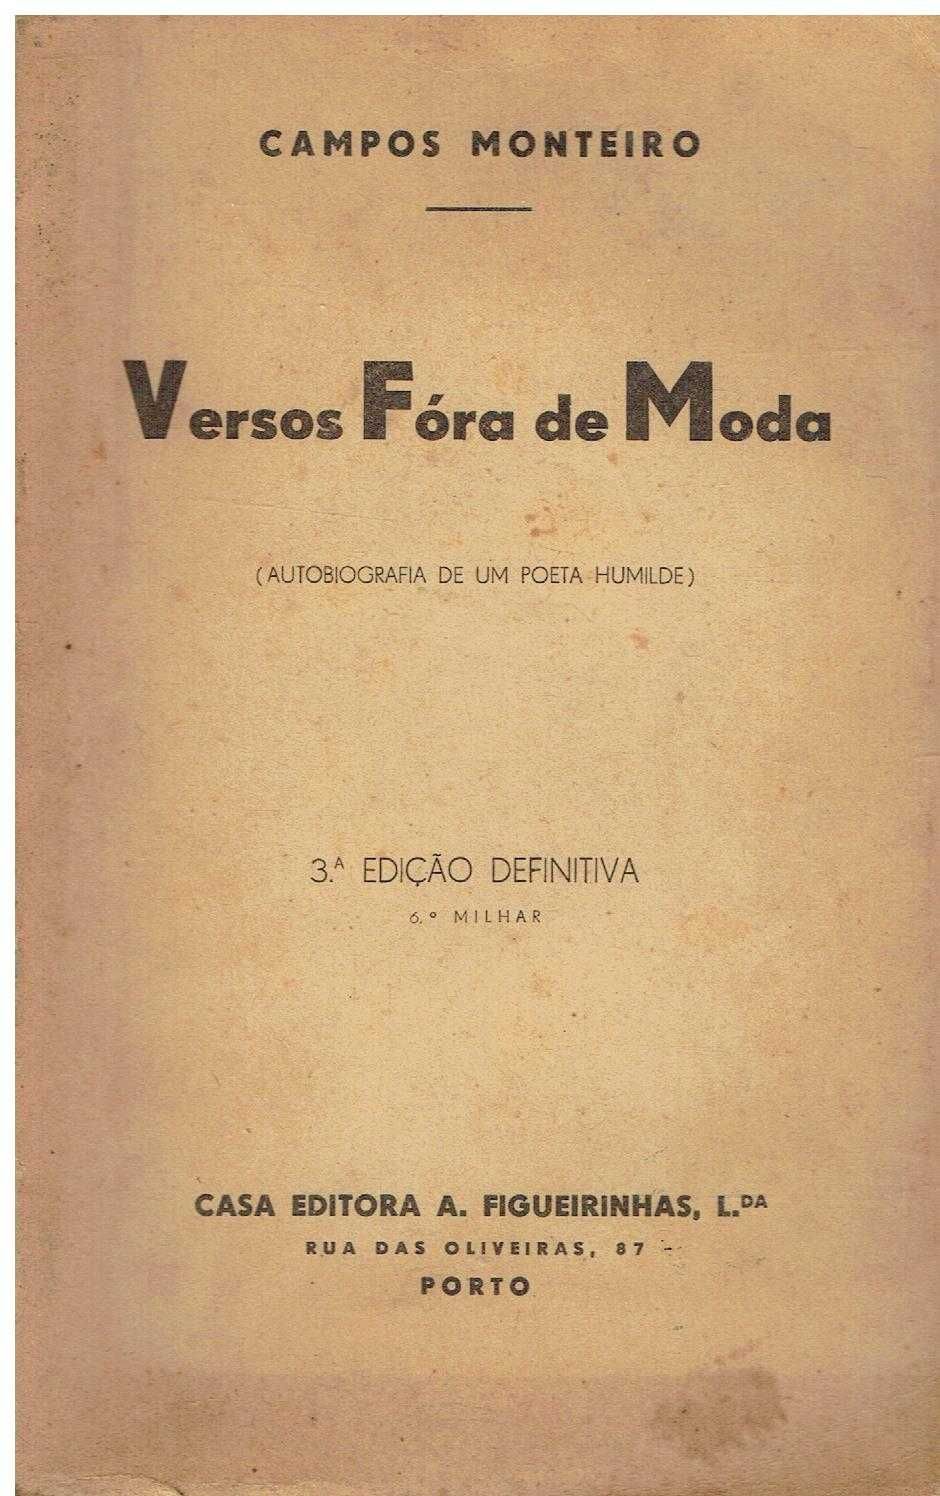 4797 - Livros de Campos Monteiro 2